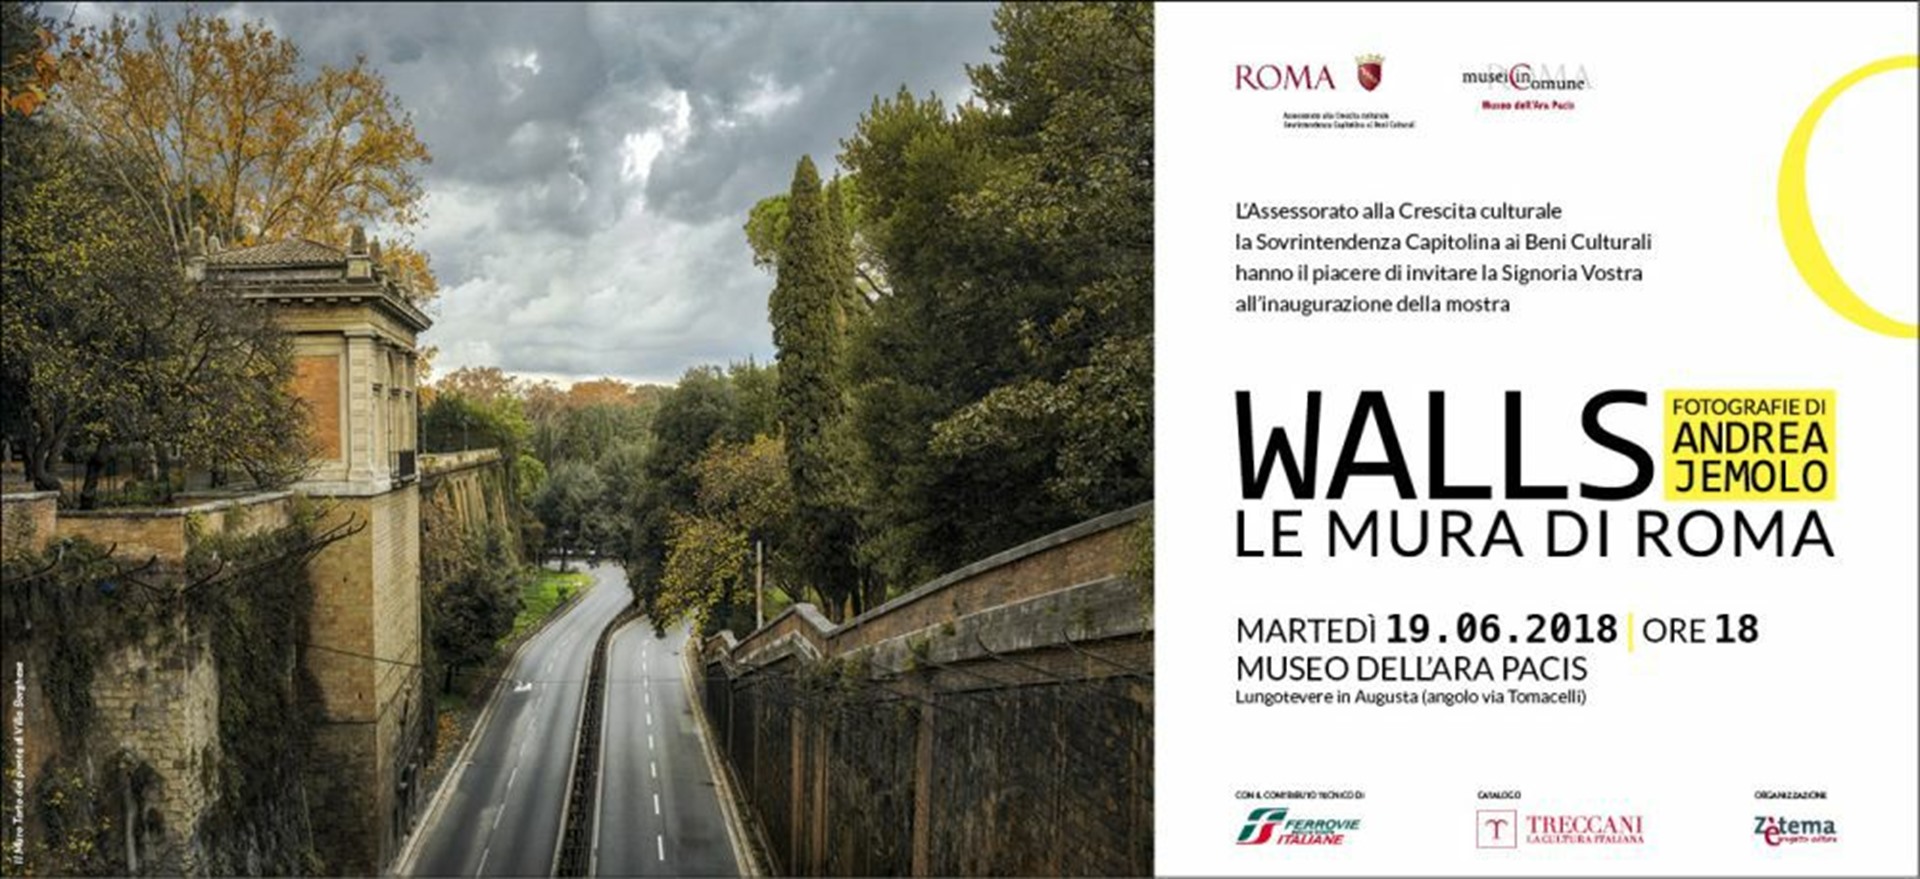 WALLS Le mura di Roma fotografie di Andrea Jemolo